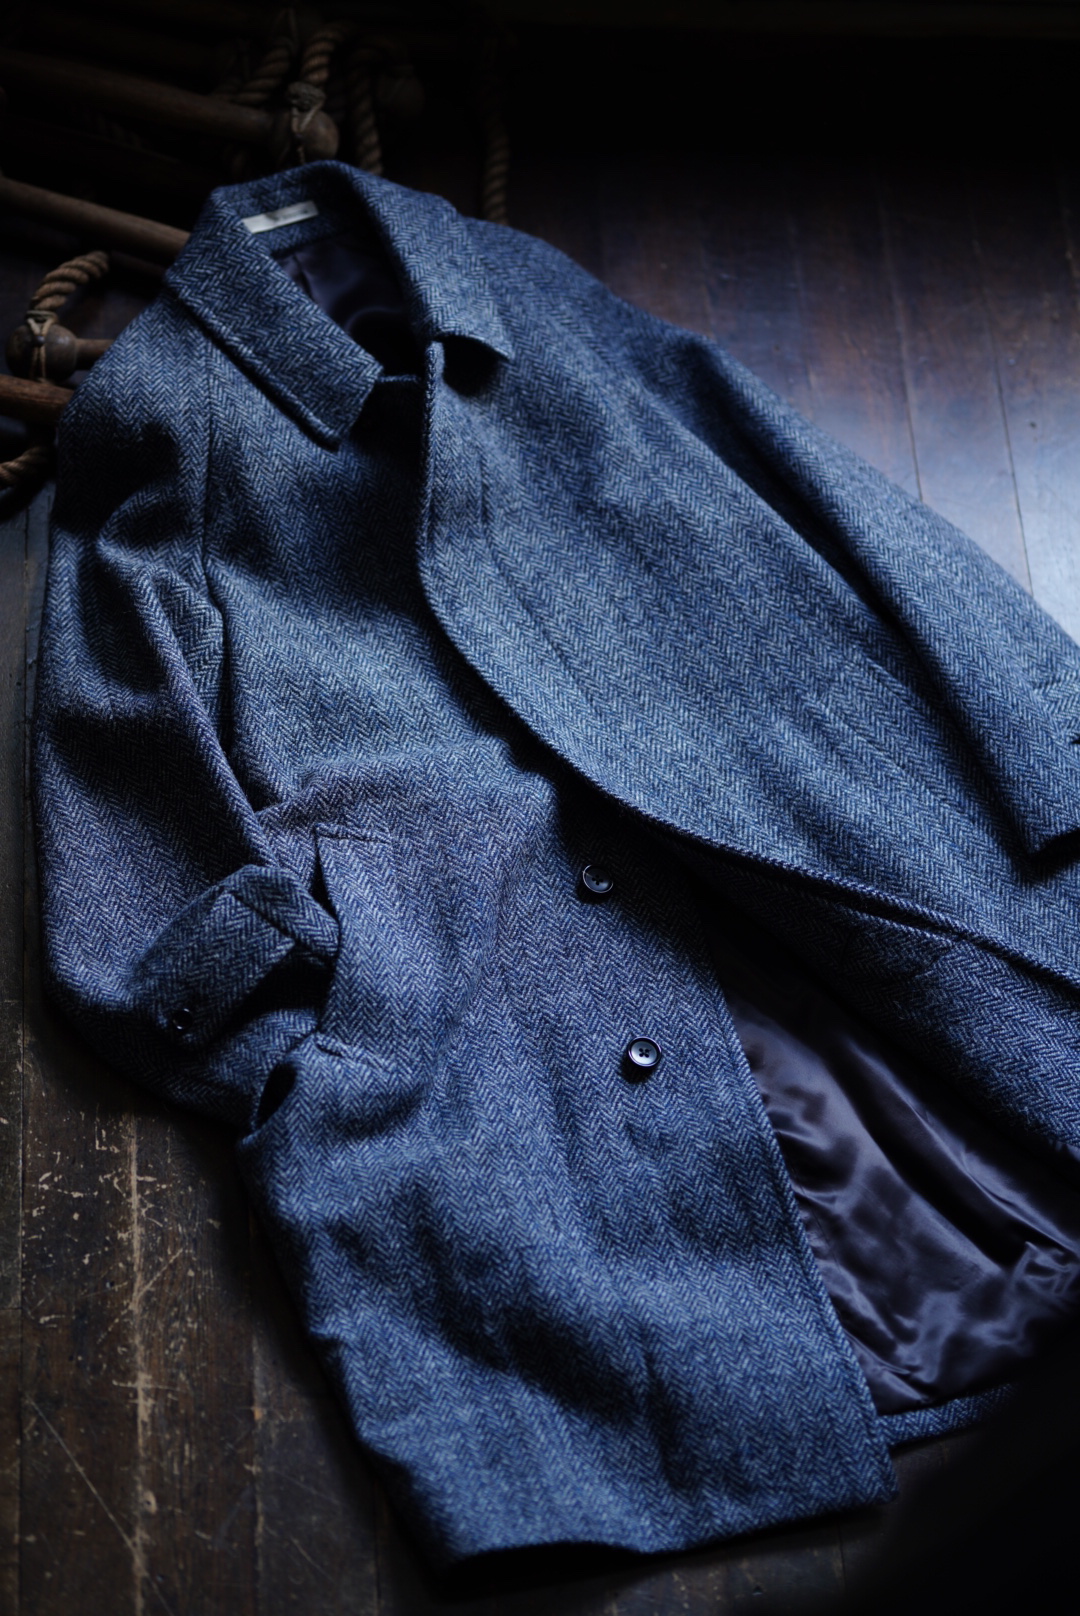 Tailored Balmacaan Coat(Hand Woven Tweed)